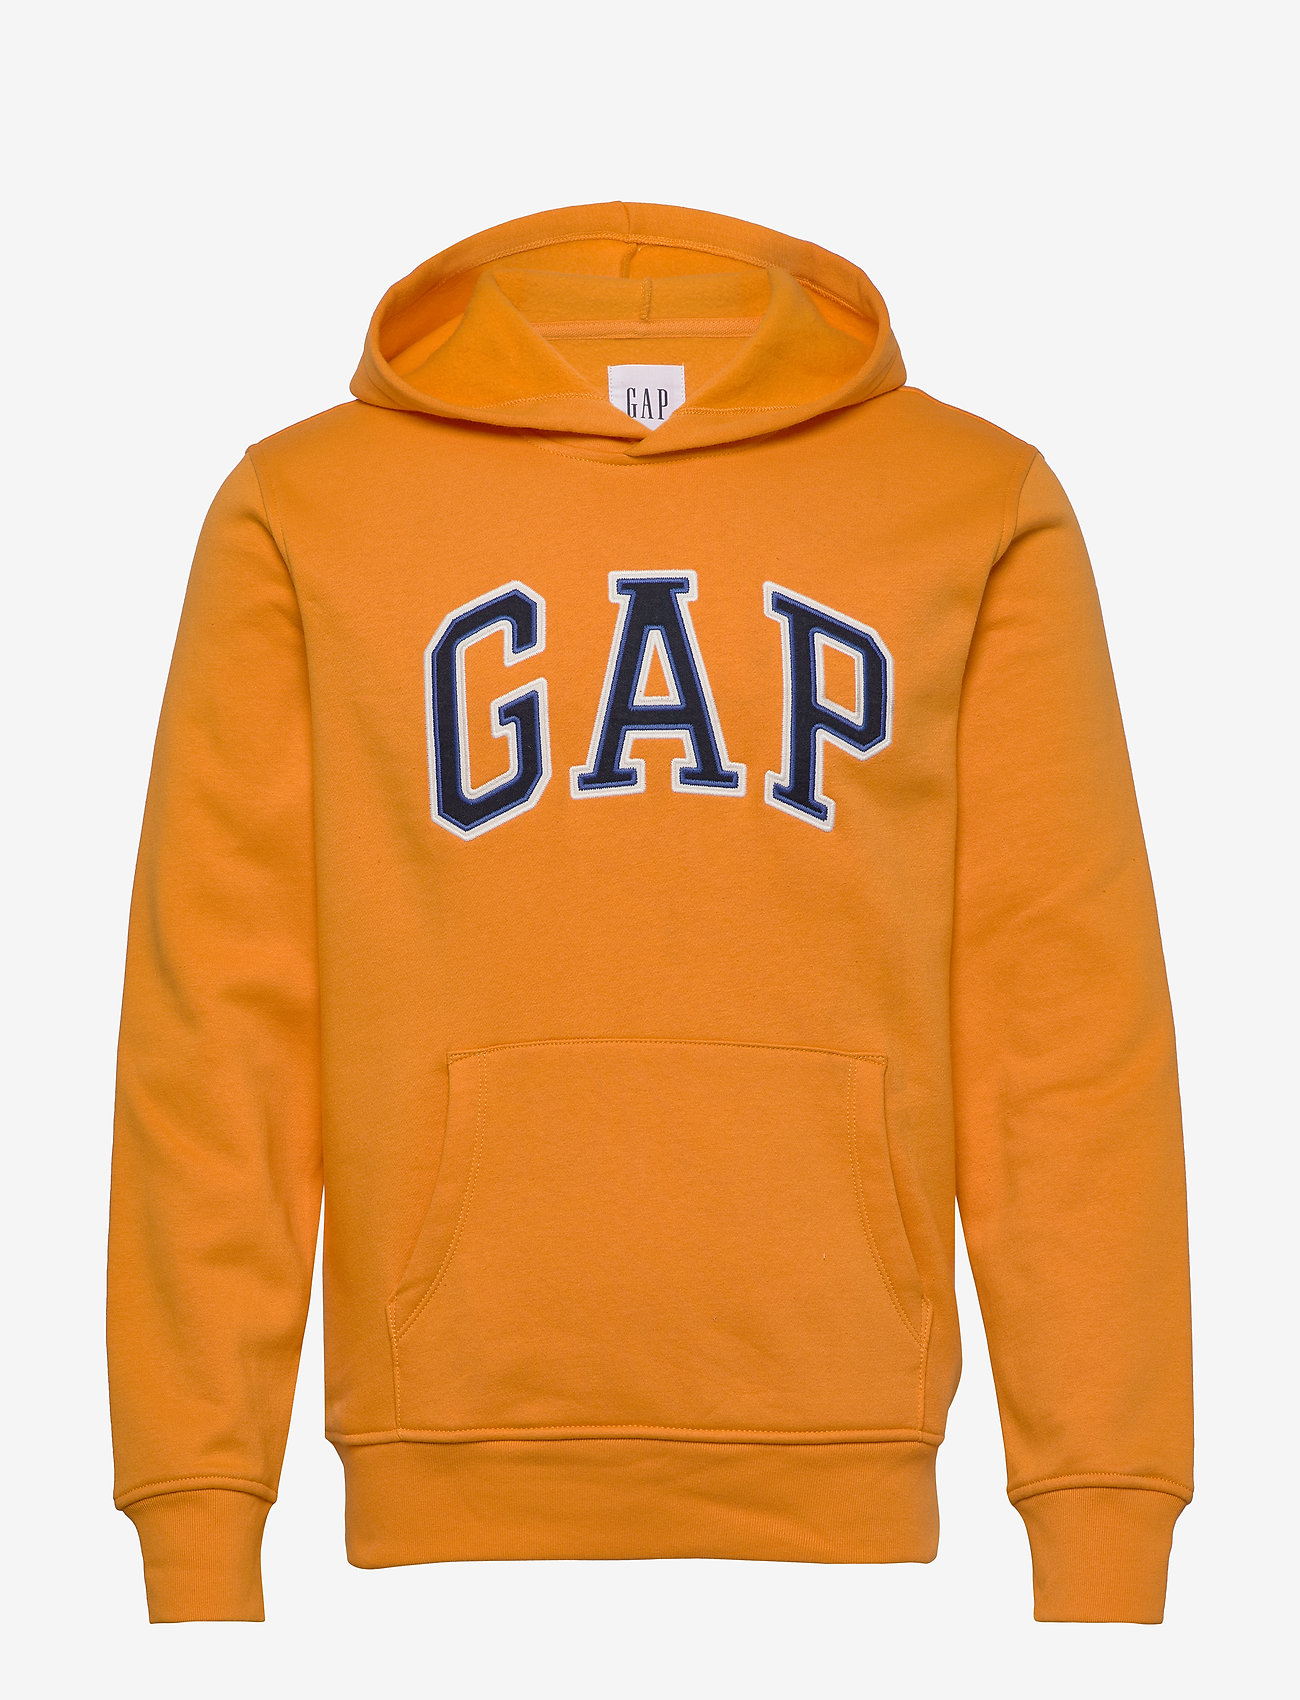 gap hoodies sale